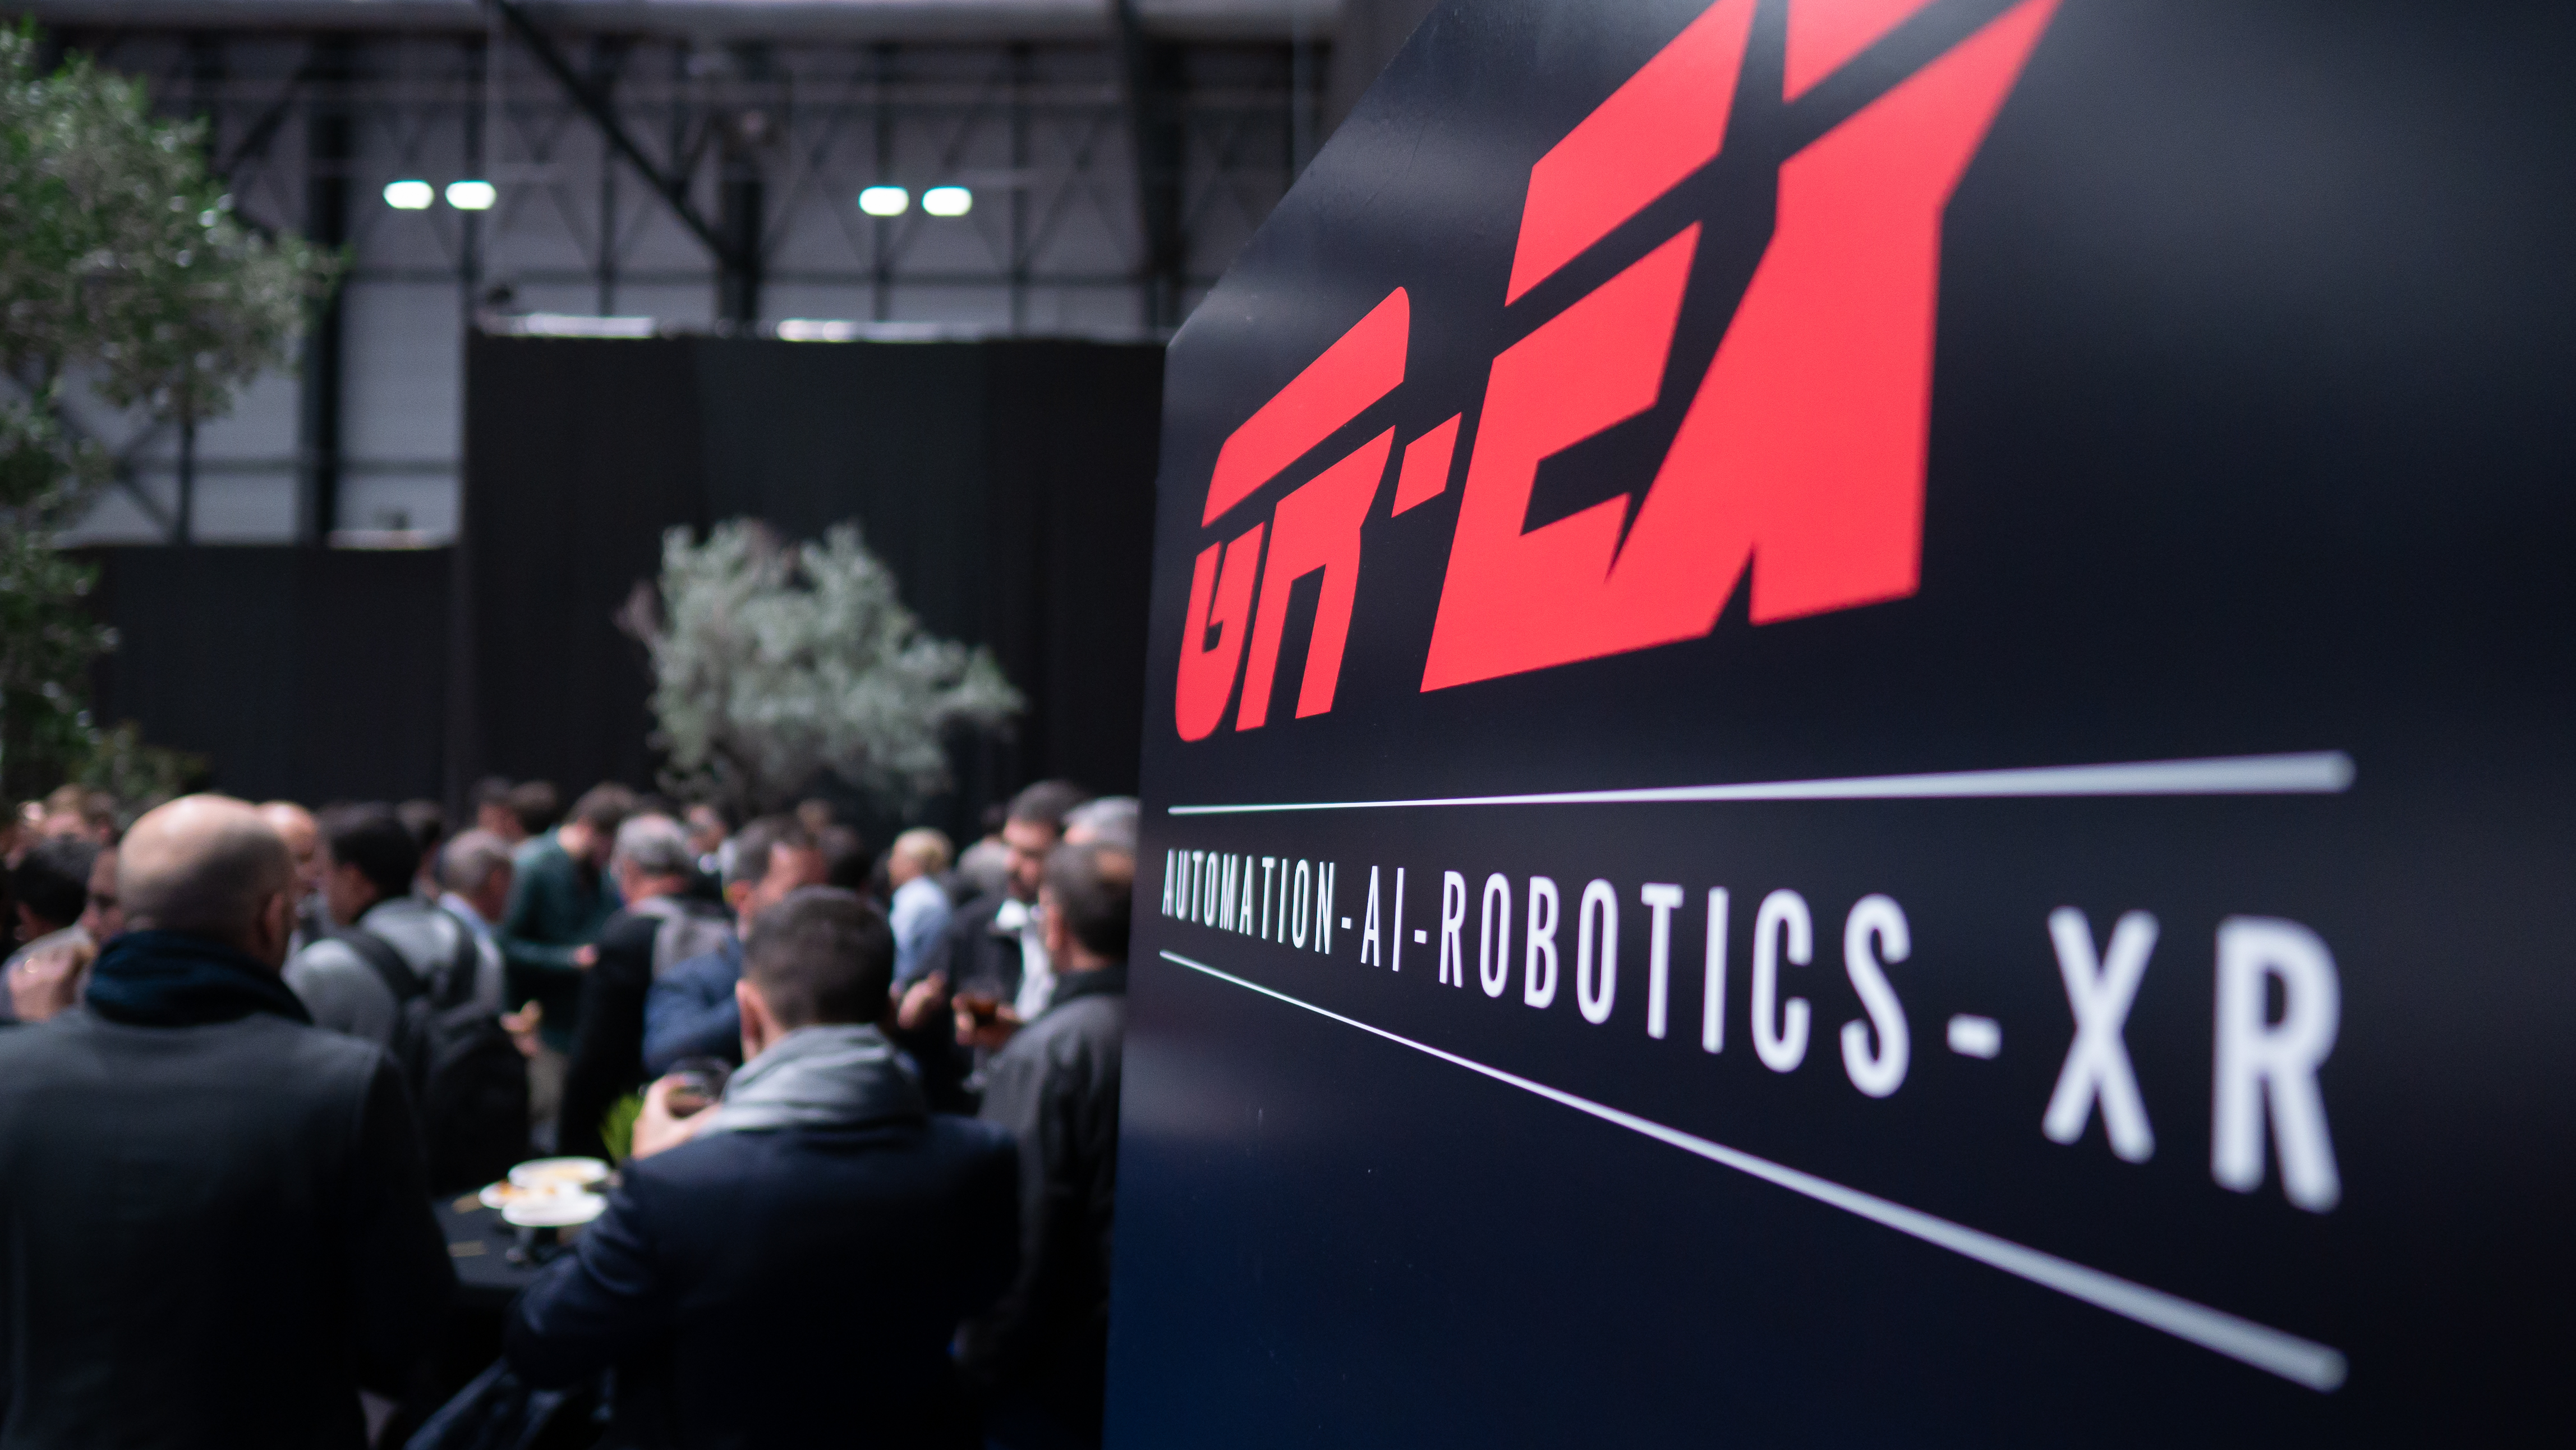 GR-EX Global Robot Expo, feria tecnológica referente en automatización e innovación industrial, cierra su 6ª edición con gran éxito de visitantes y generación de negocio